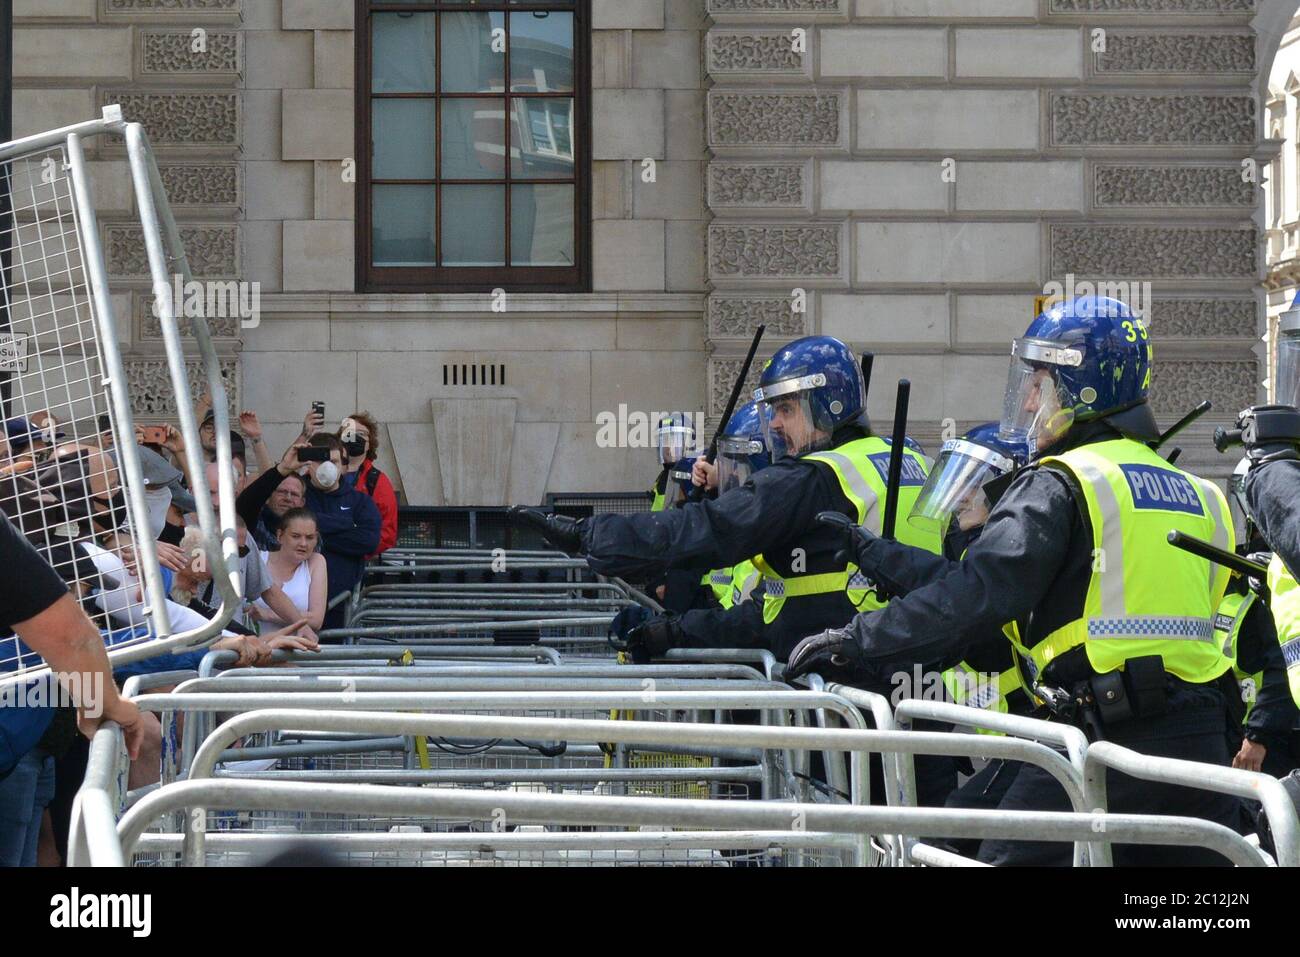 La police a été ébouée de bouteilles et de fusées éclairantes lors de violents affrontements avec des manifestants d'extrême droite dans le centre de Londres Banque D'Images